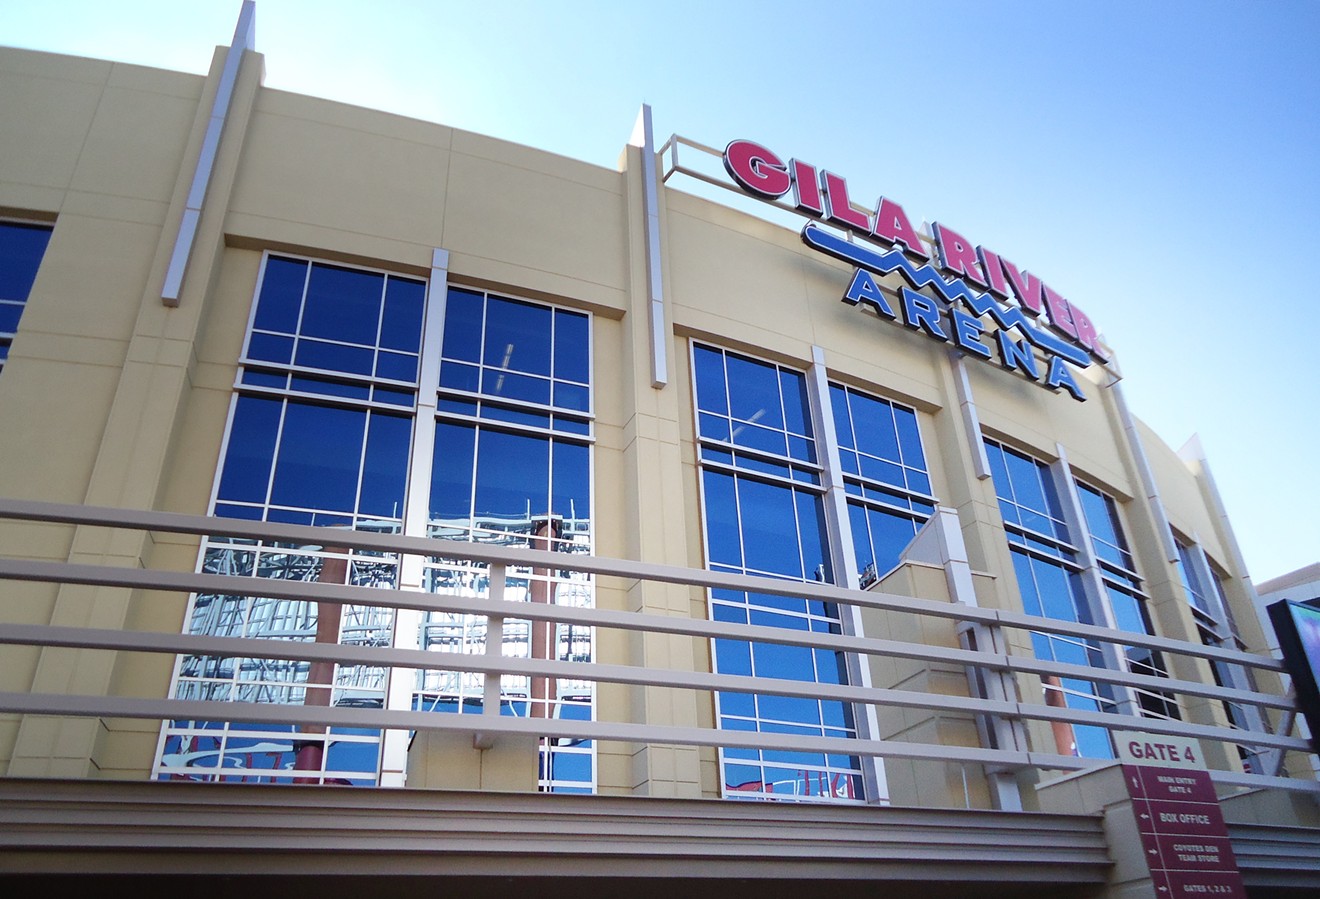 Gila River Arena in Glendale, site of Ace Comic Con 2018.